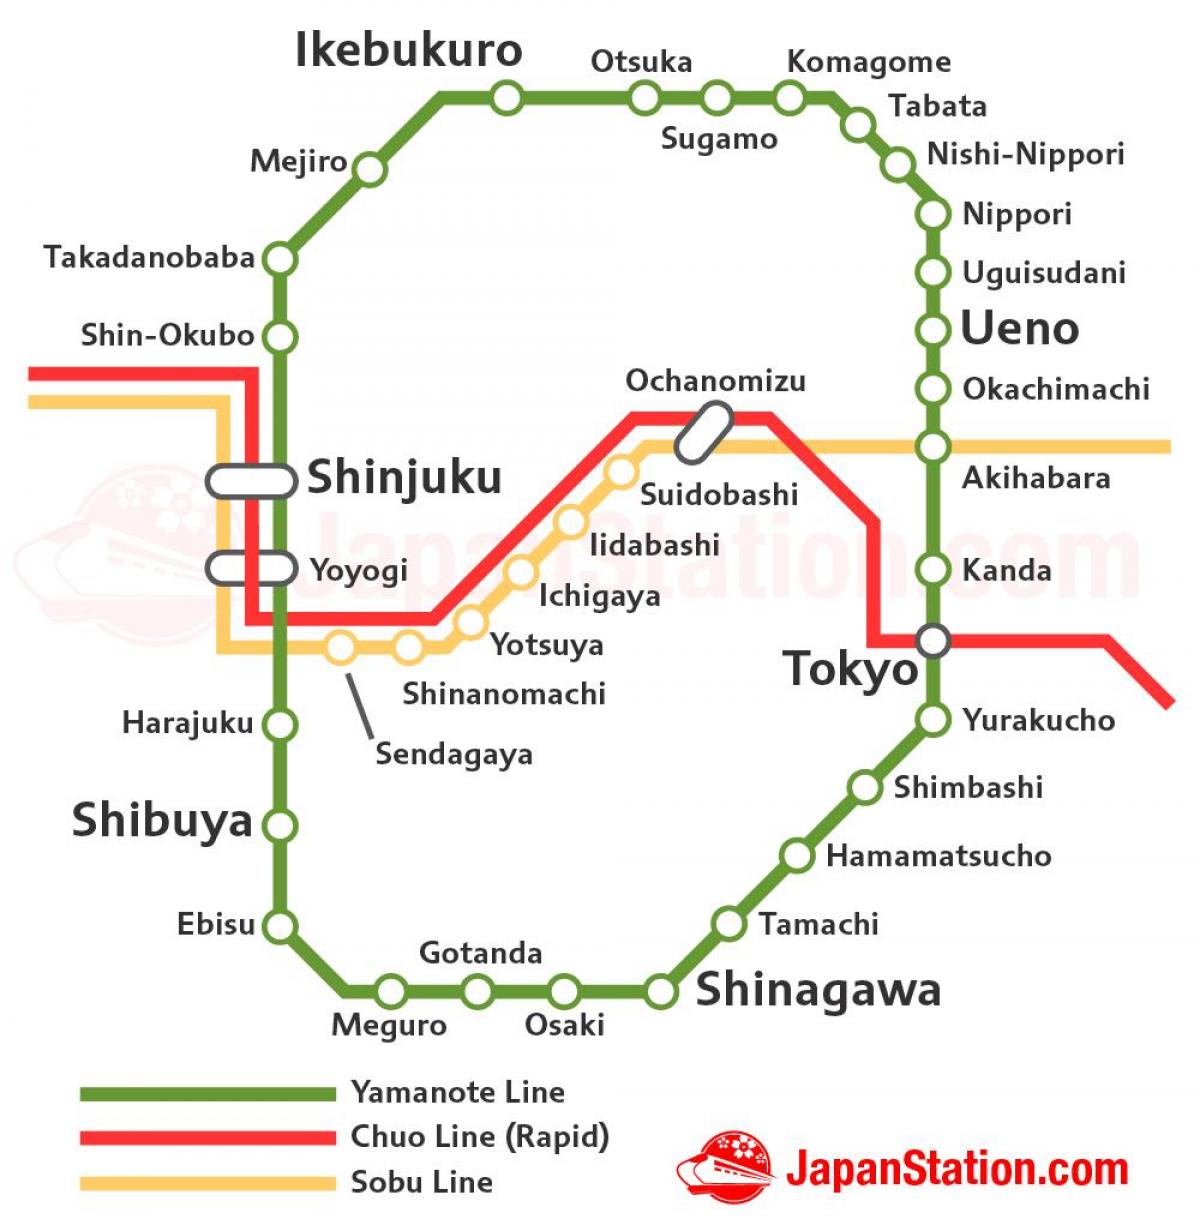 Tokyo JR line map